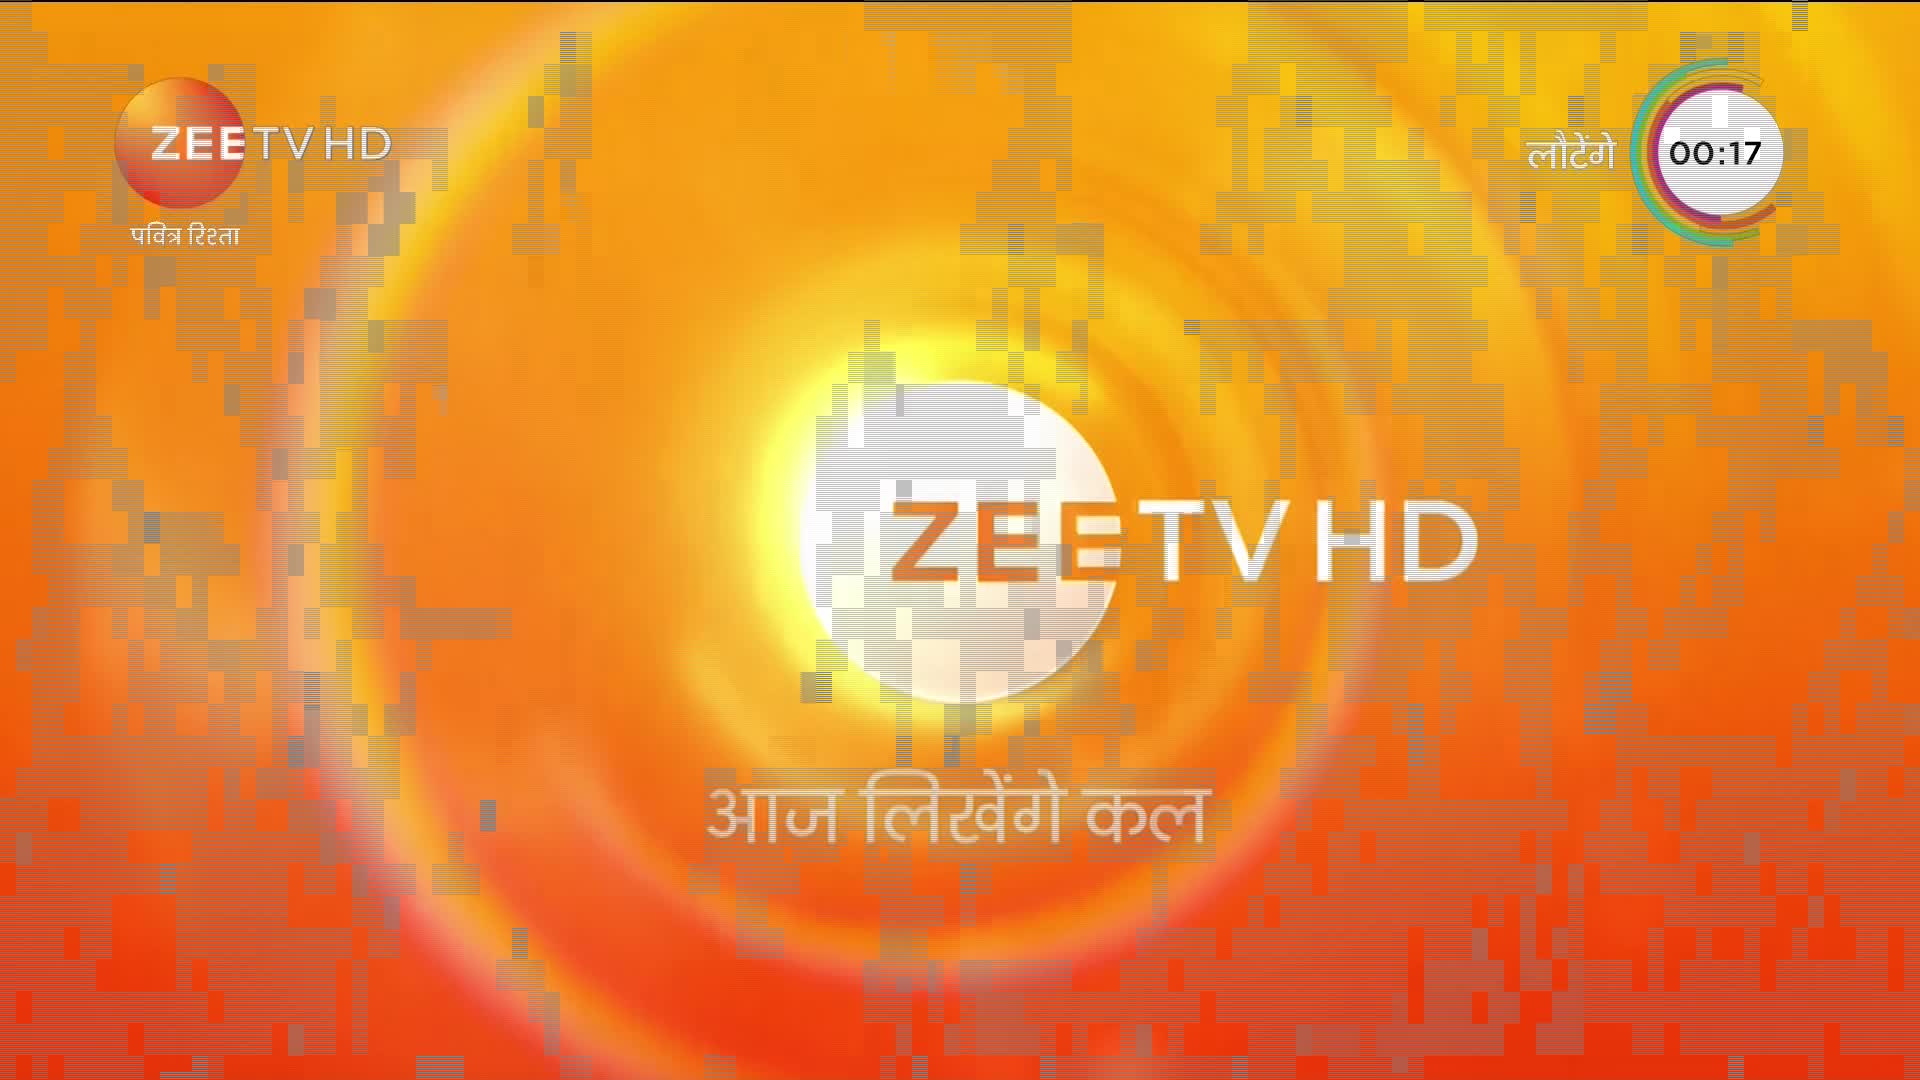 IN ZEE TV HD - INDIA